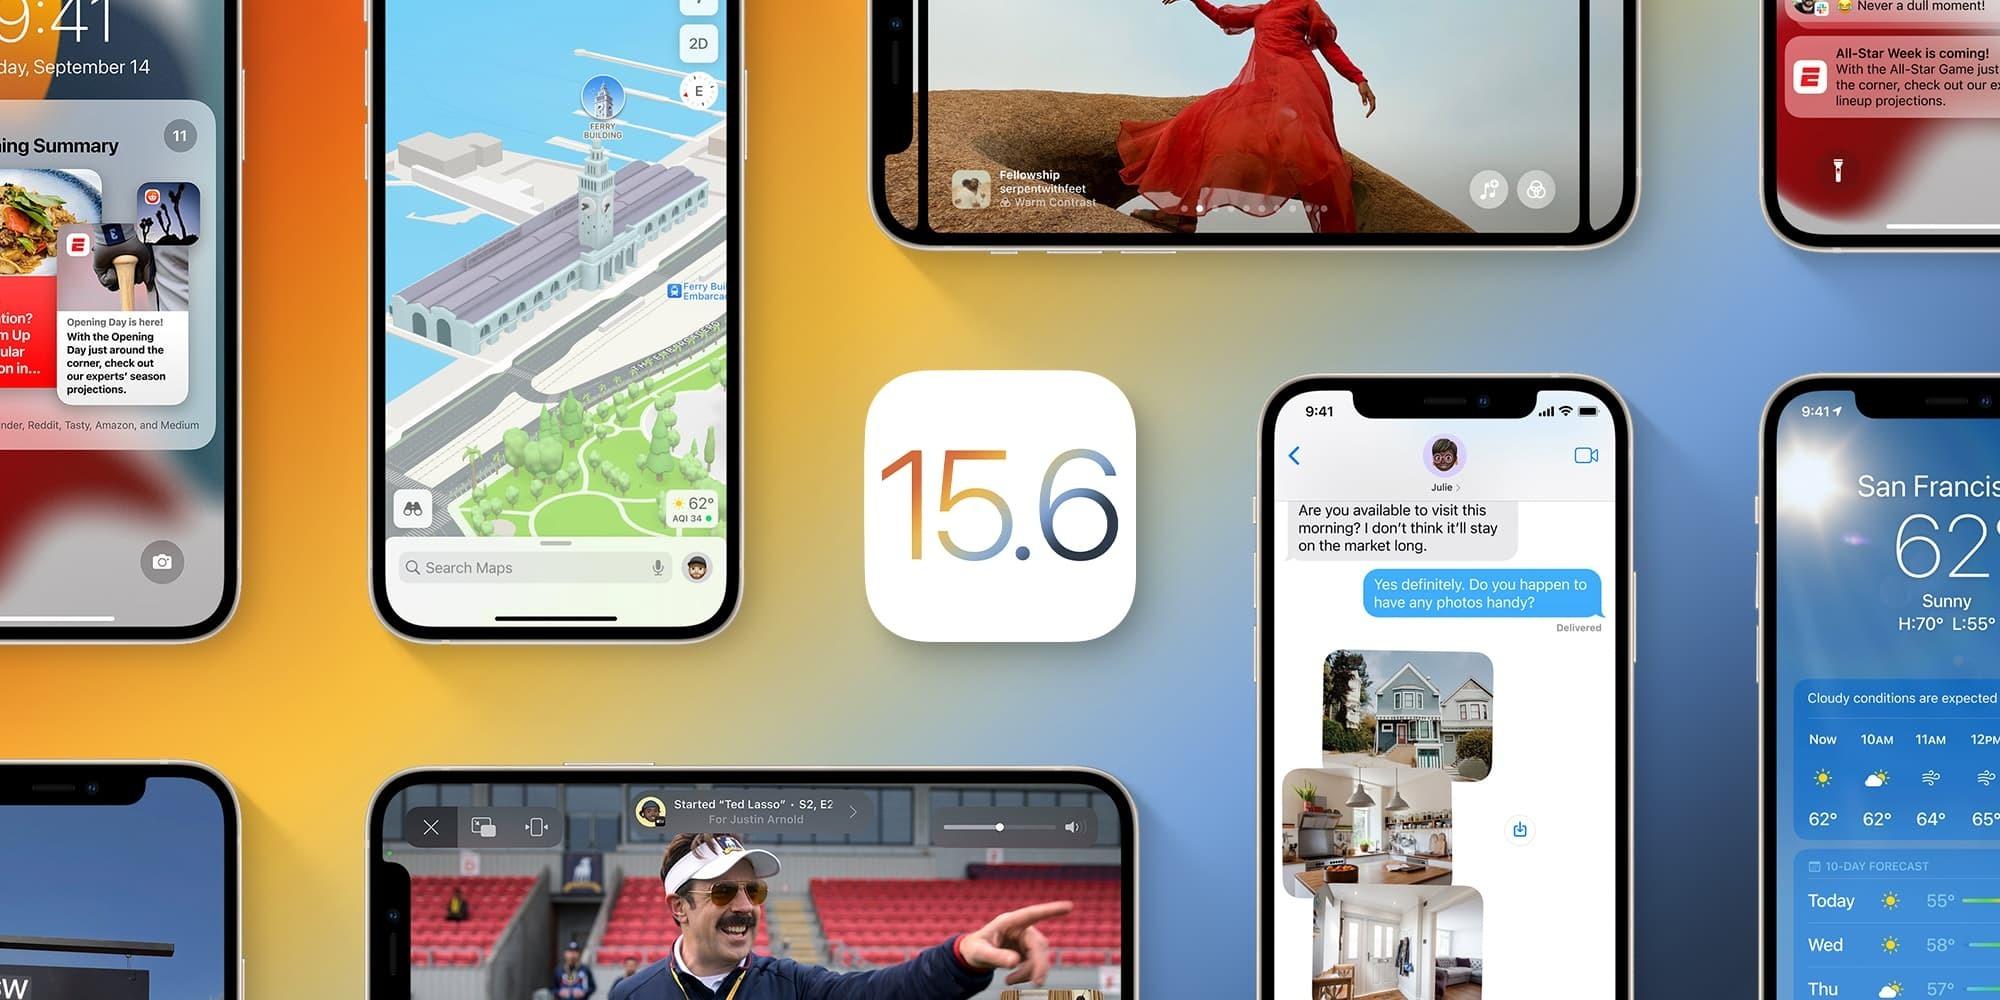 Apple phát hành iOS 15.6 và iPadOS 15.6: Sửa lỗi Safari, hiển thị sai dung lượng trong cài đặt